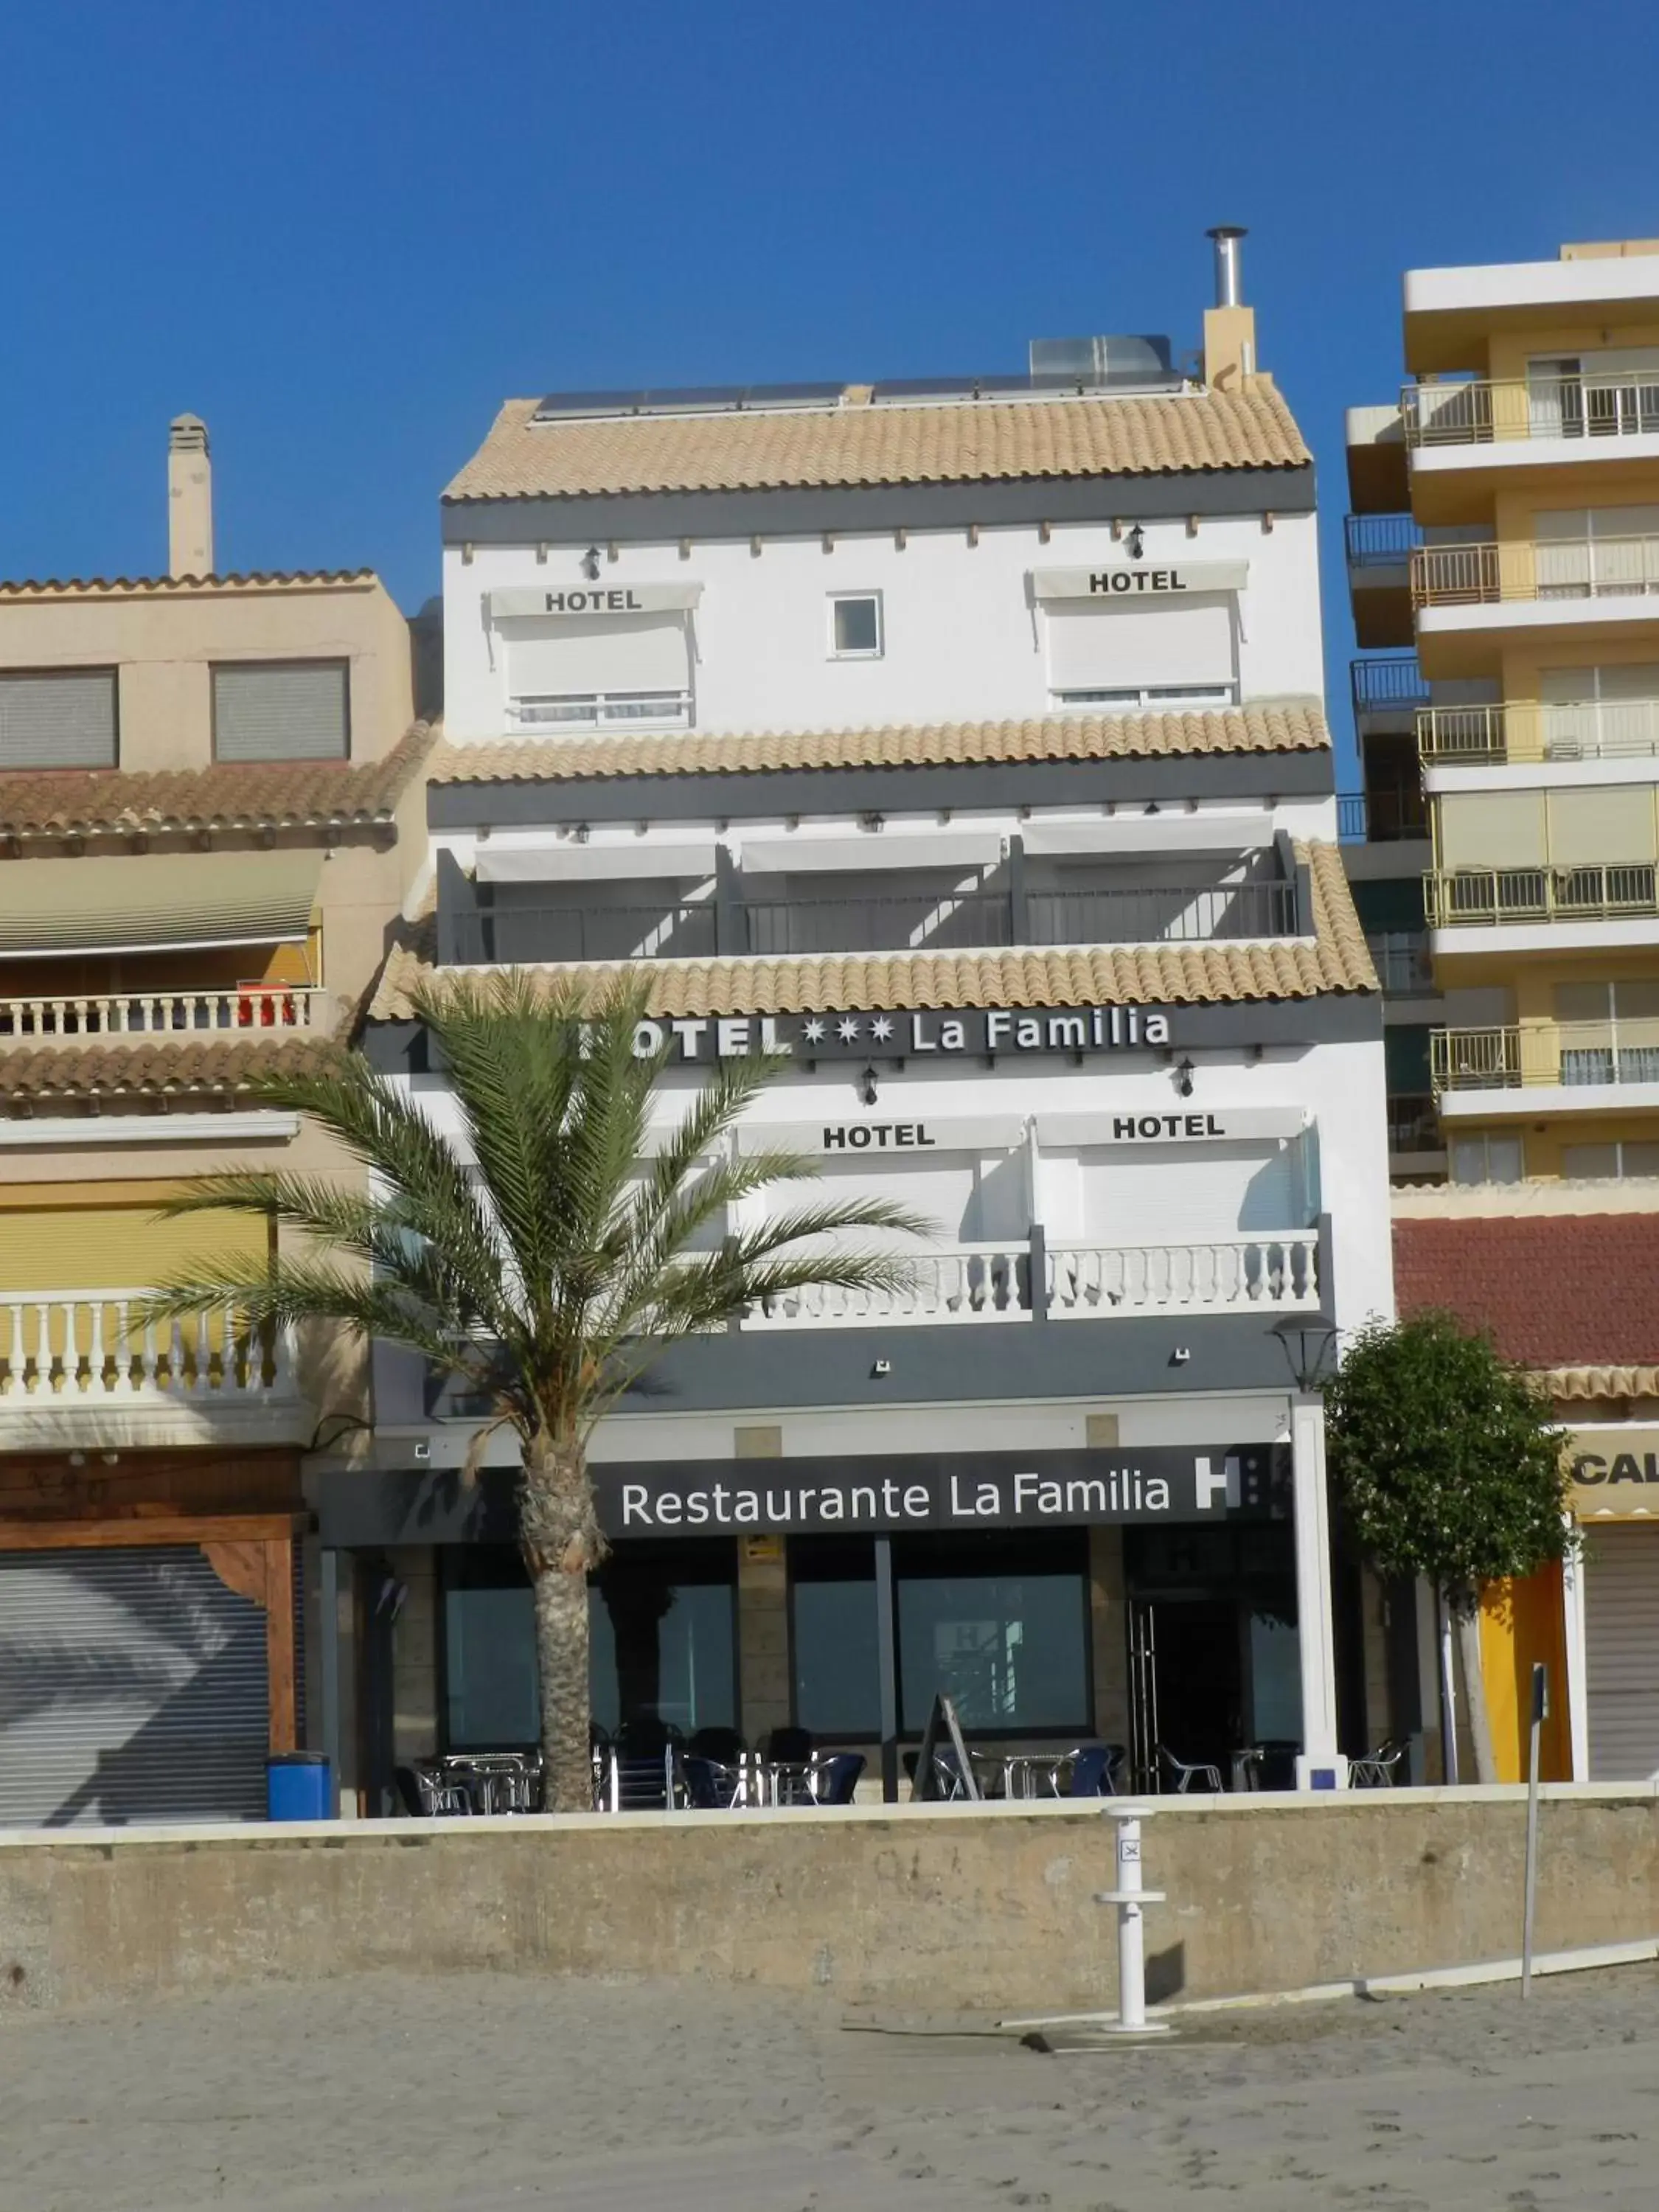 Facade/entrance, Property Building in Hotel La Familia